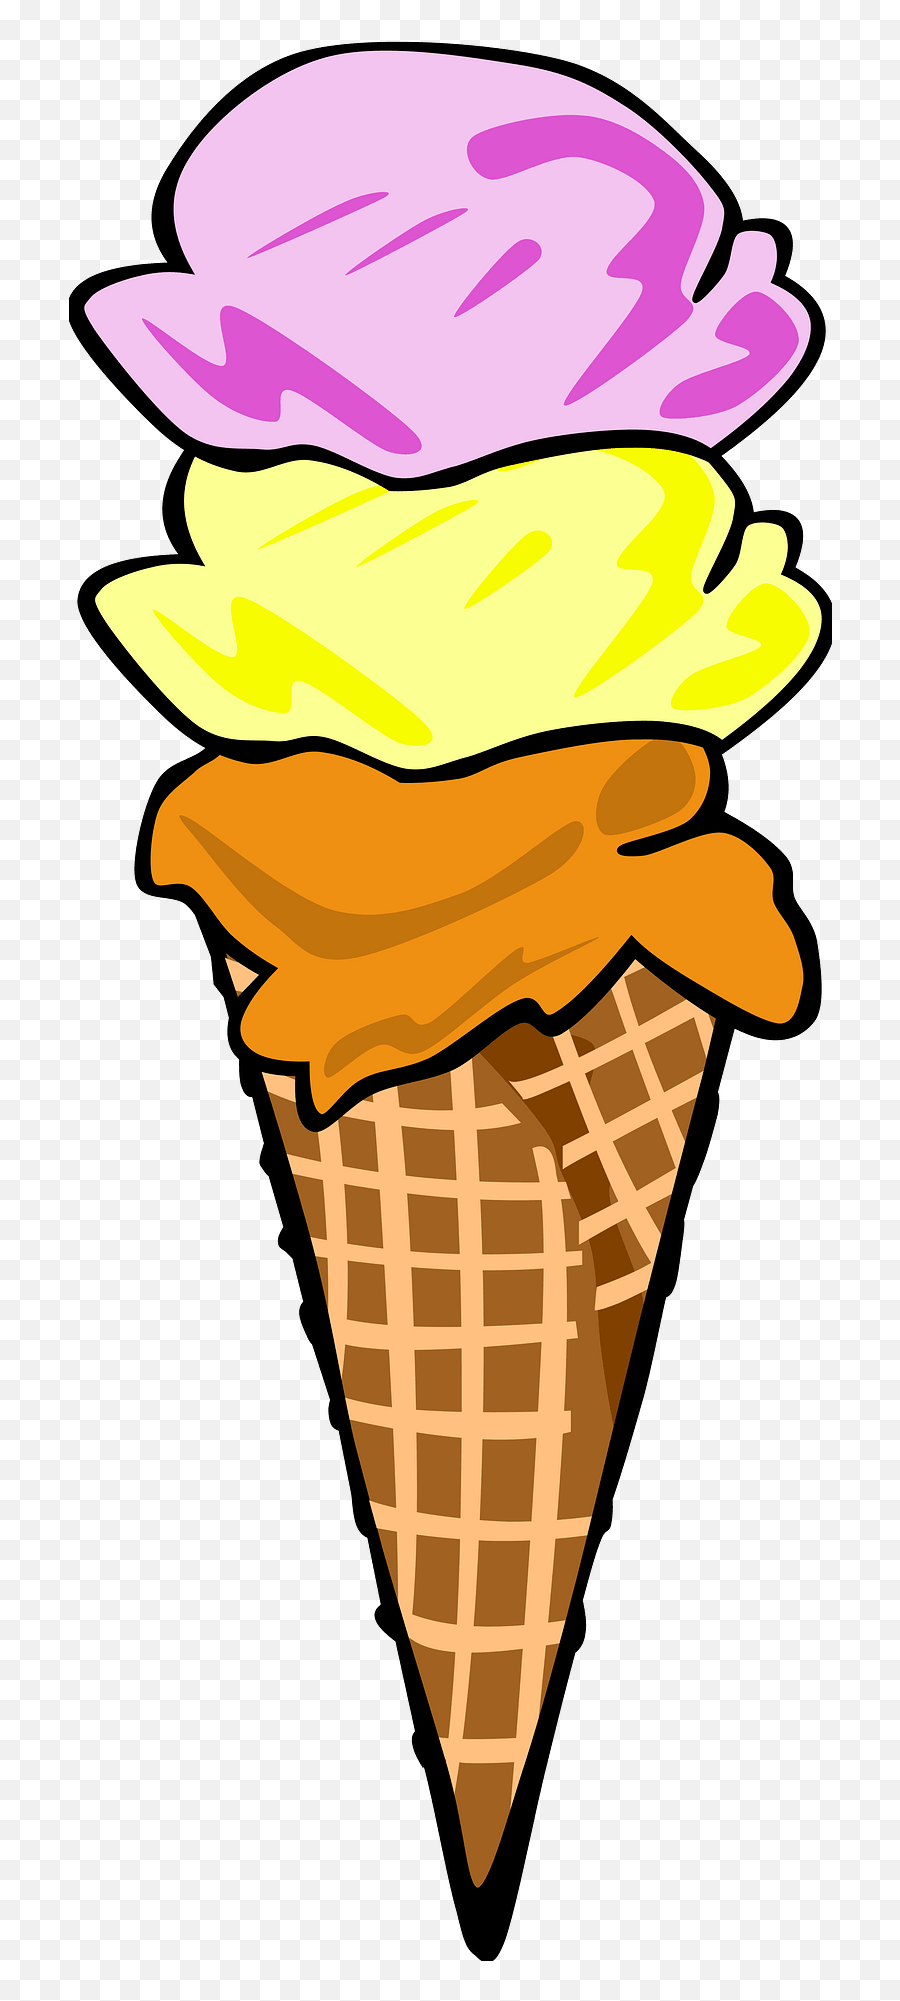 Three Flavors Of Ice Cream - Small Ice Cream Clipart Emoji,Ice Cream Cone Emoji